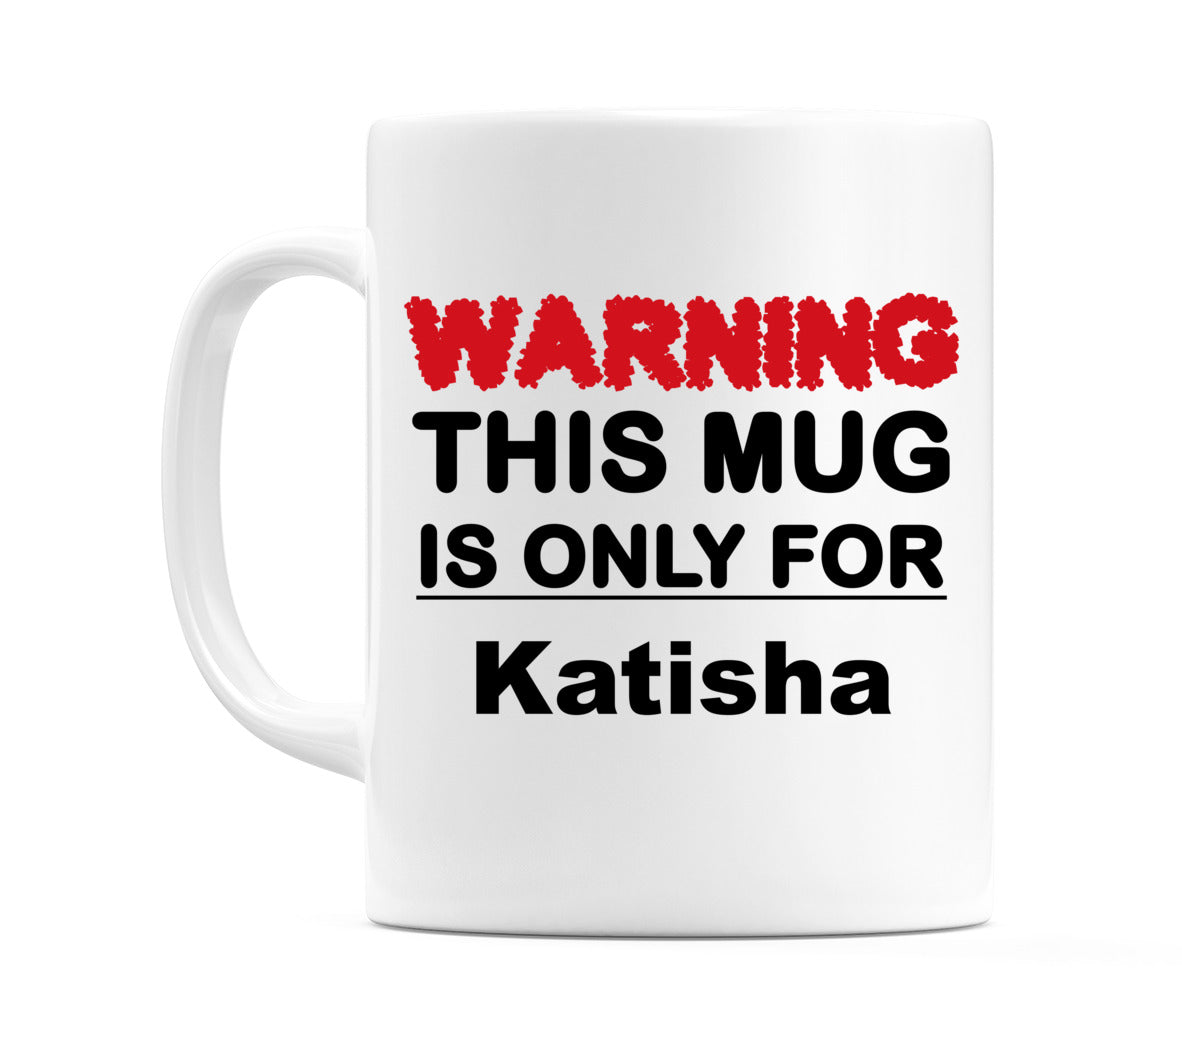 Warning This Mug is ONLY for Katisha Mug